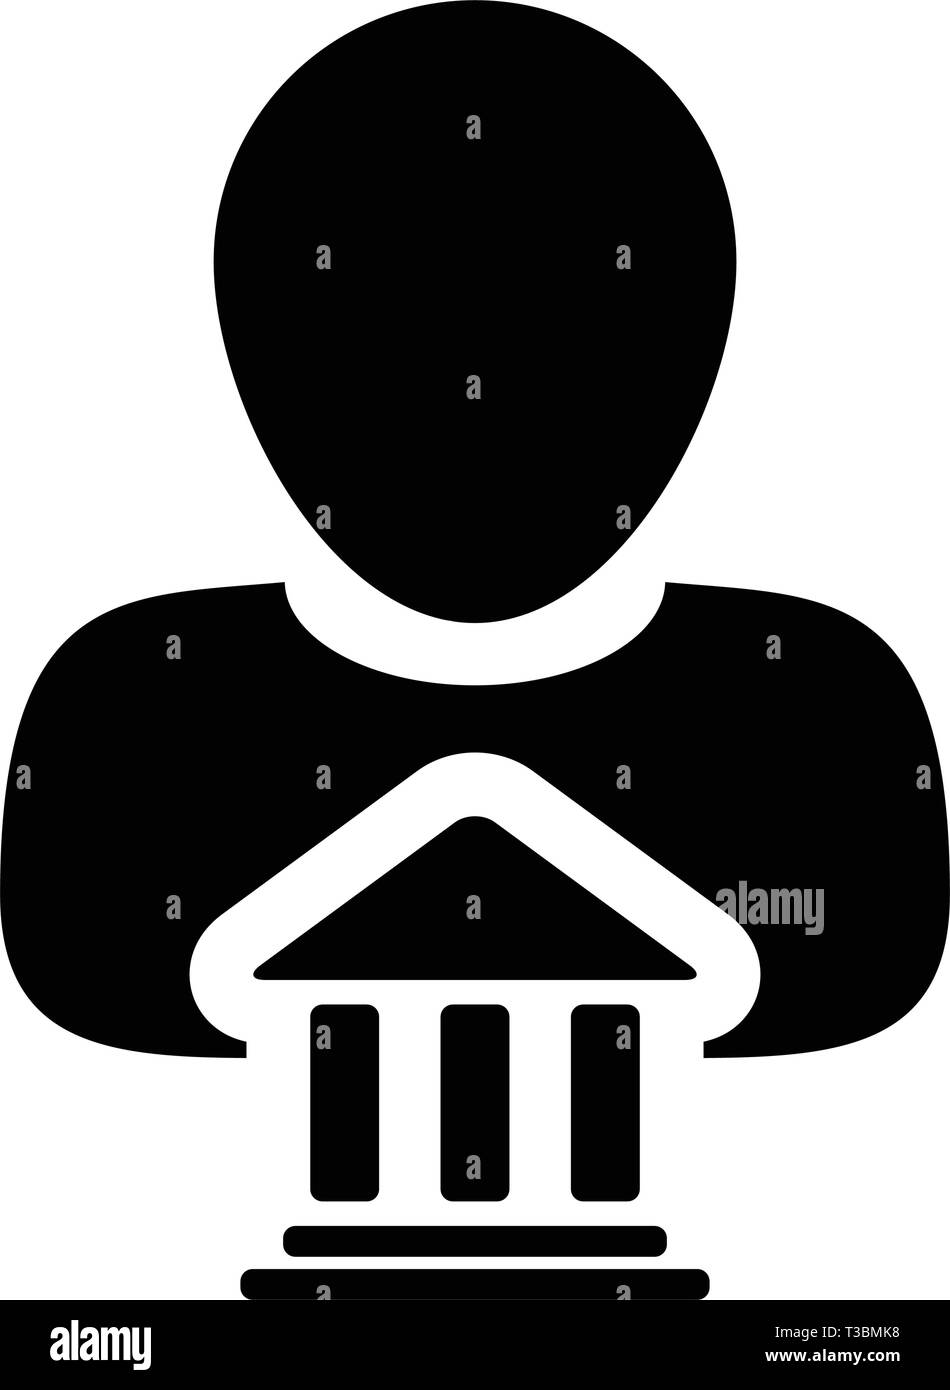 Rechtliche Symbol Vektor mit männliche Person Profil Avatar mit Gebäude Symbol für Recht und Gerechtigkeit in Glyph Piktogramm Abbildung Stock Vektor